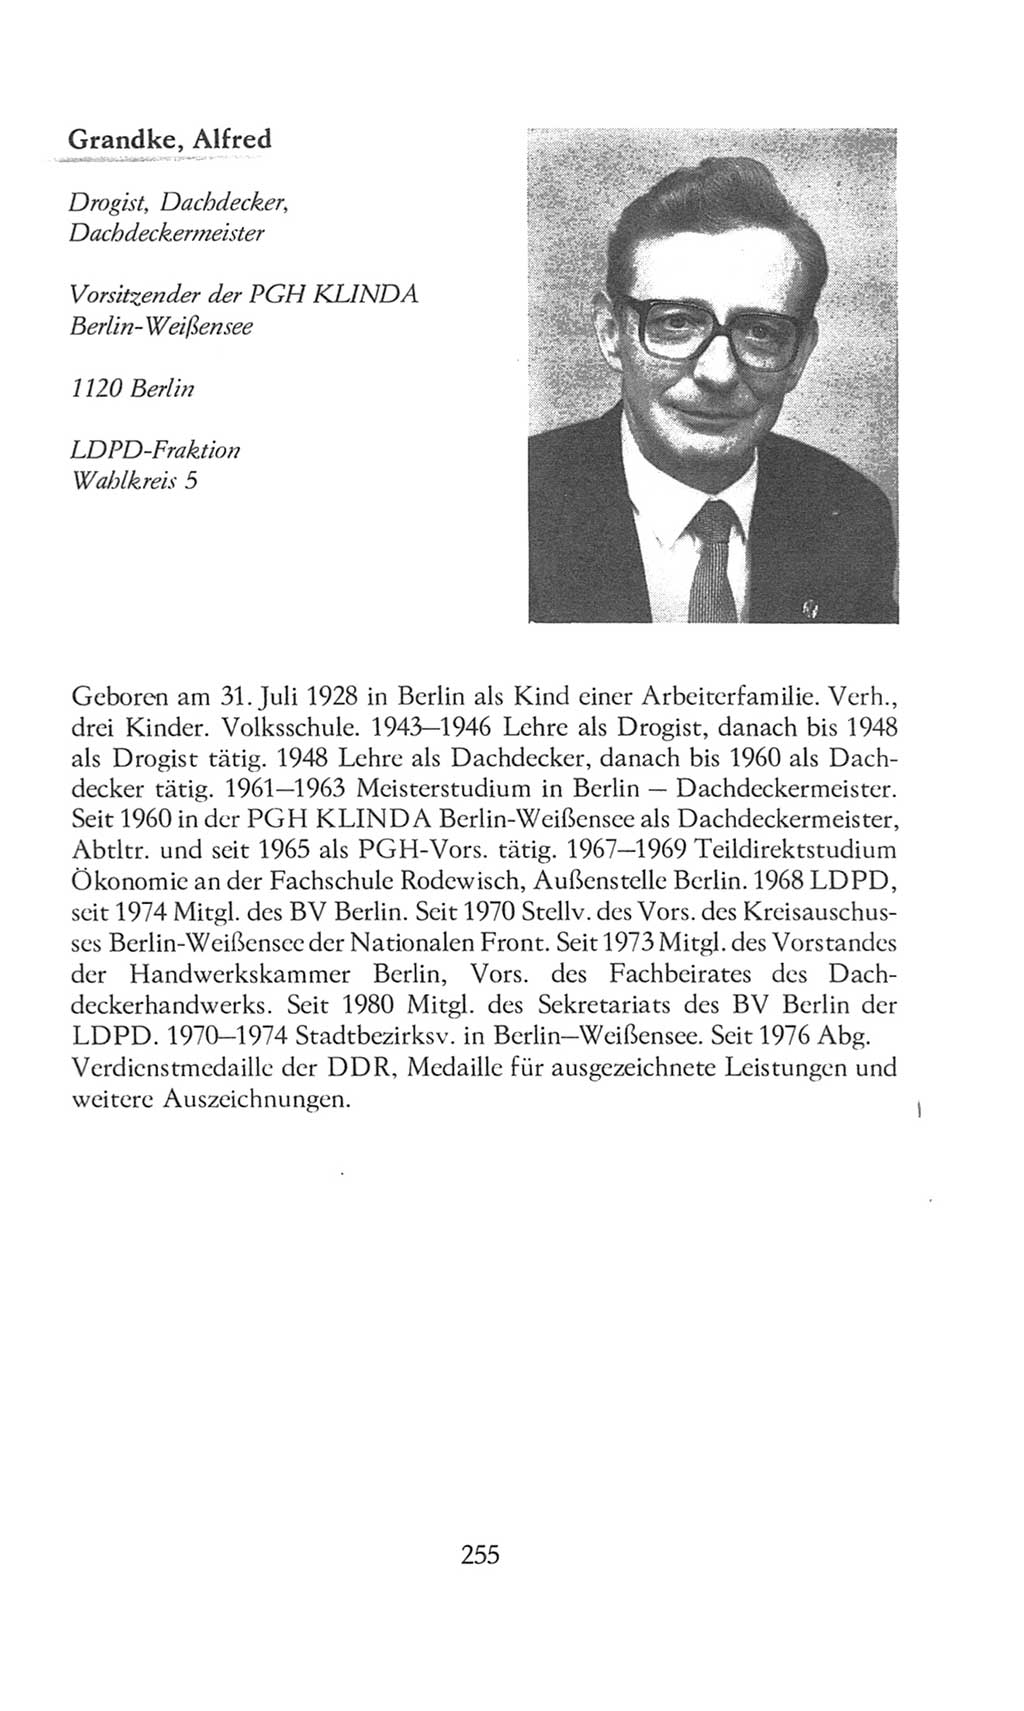 Volkskammer (VK) der Deutschen Demokratischen Republik (DDR), 8. Wahlperiode 1981-1986, Seite 255 (VK. DDR 8. WP. 1981-1986, S. 255)